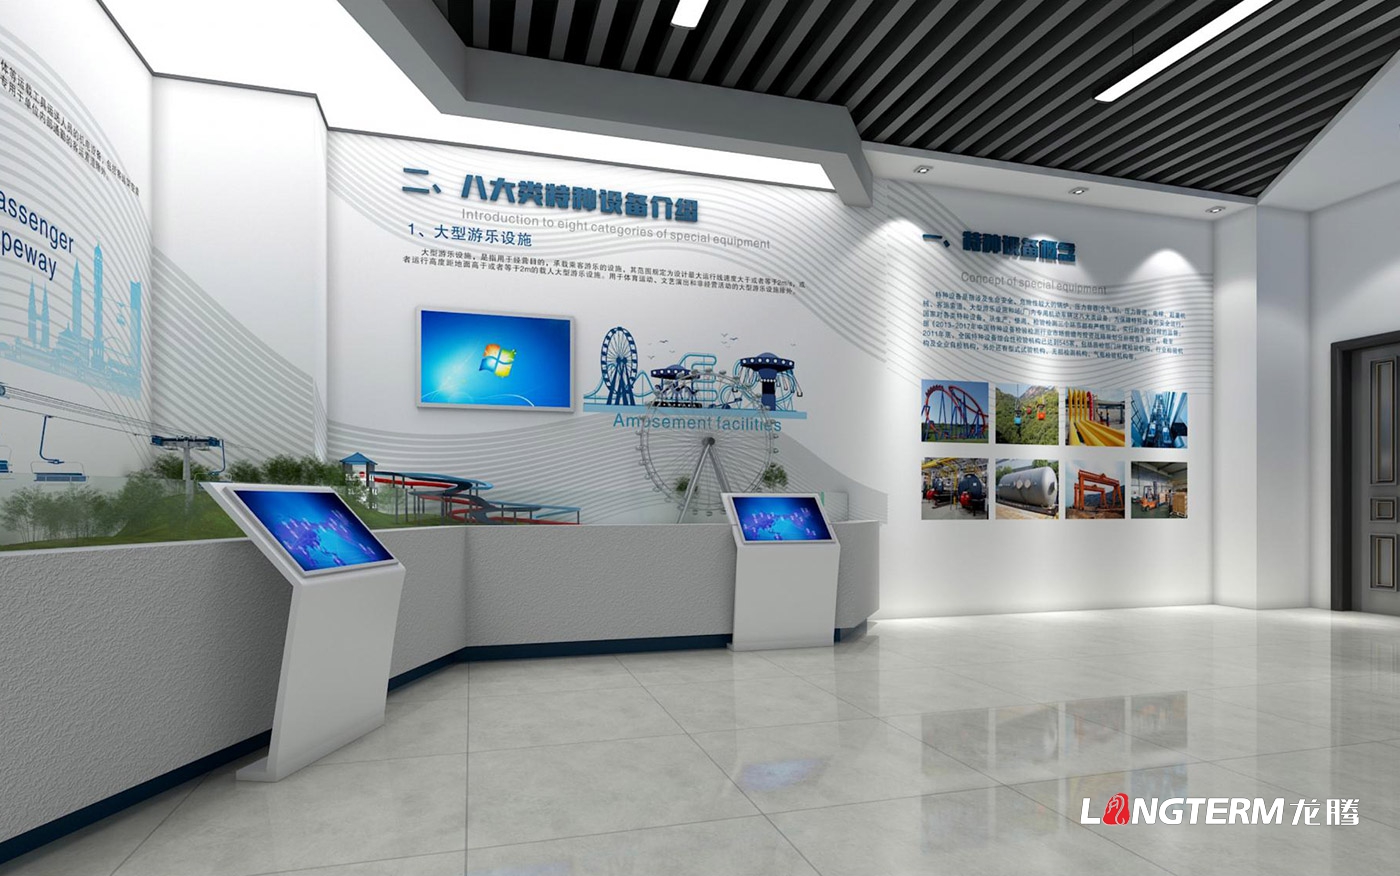 四川省特种设备检验研究院科技成果展览室、特种设备科普展示厅、临展区策划及文化墙建设设计